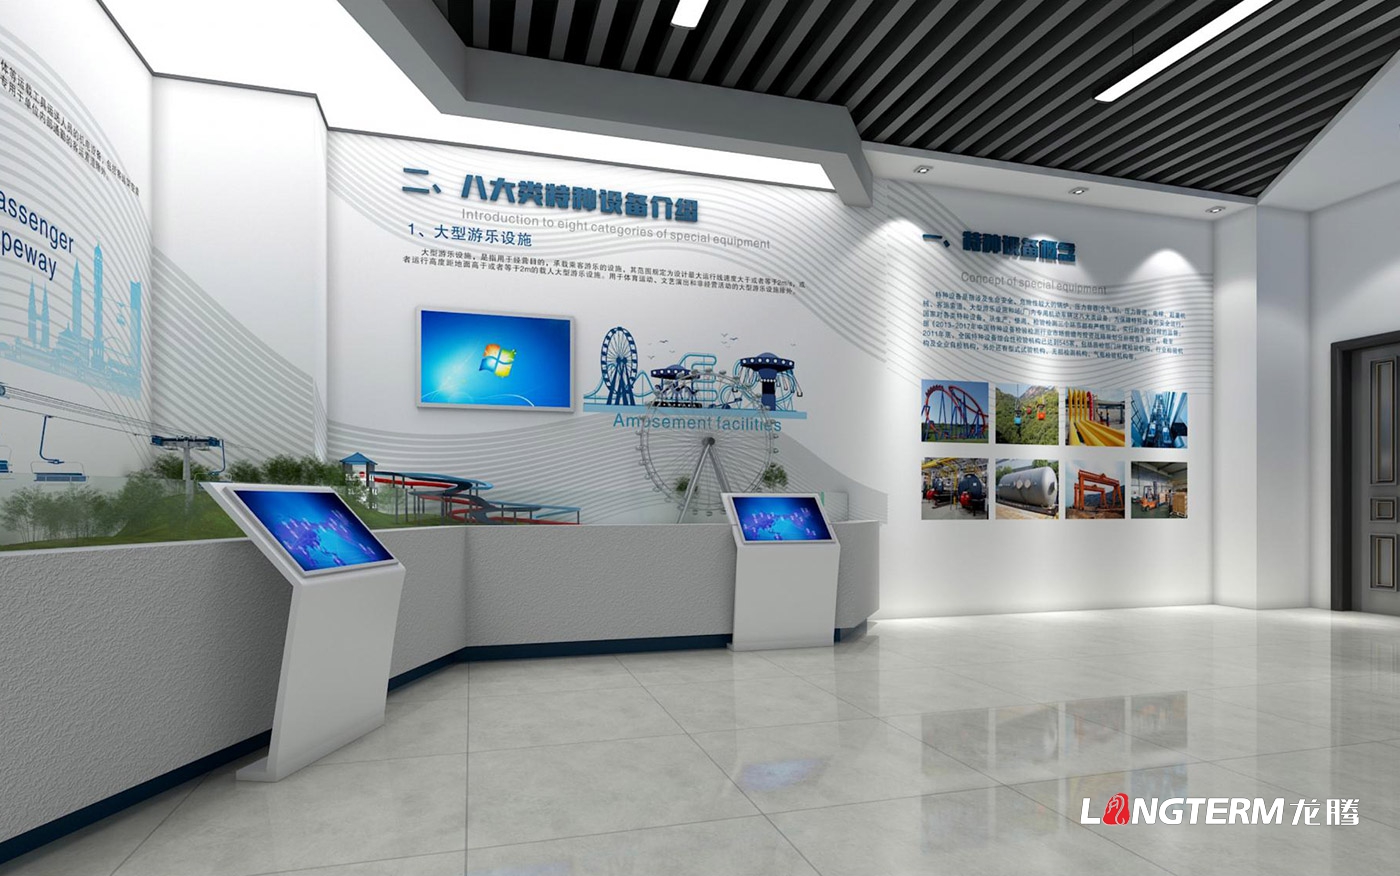 四川省特种设备检验研究院科技成果展览室、特种设备科普展示厅、临展区策划及文化墙建设设计